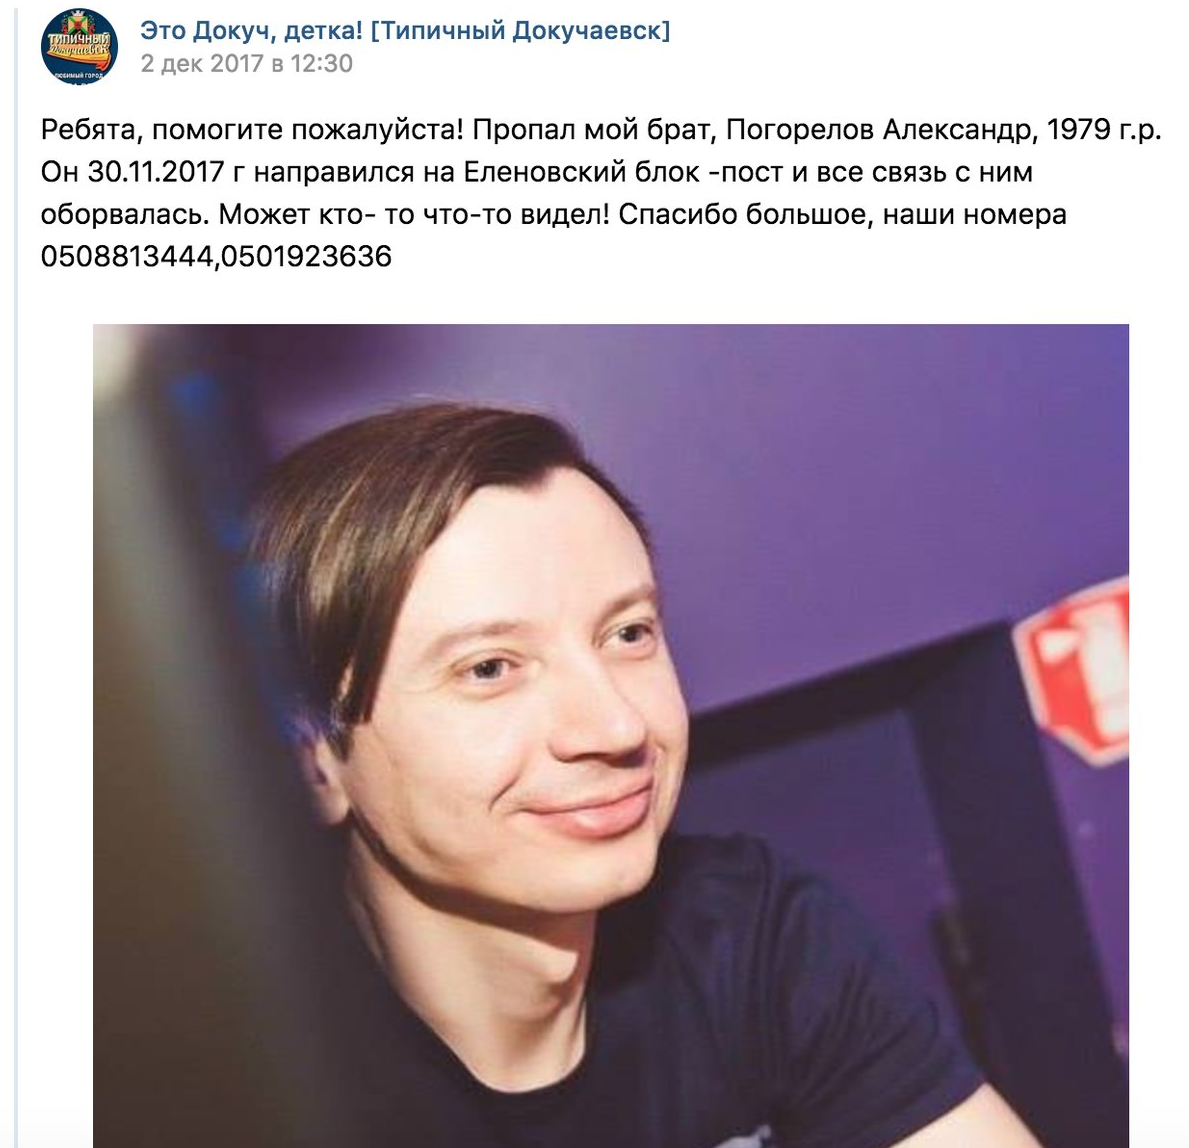 Снова провал: в 'ДНР' говорят, что Захарченко убил похищенный год назад 'диверсант' - фото 148038